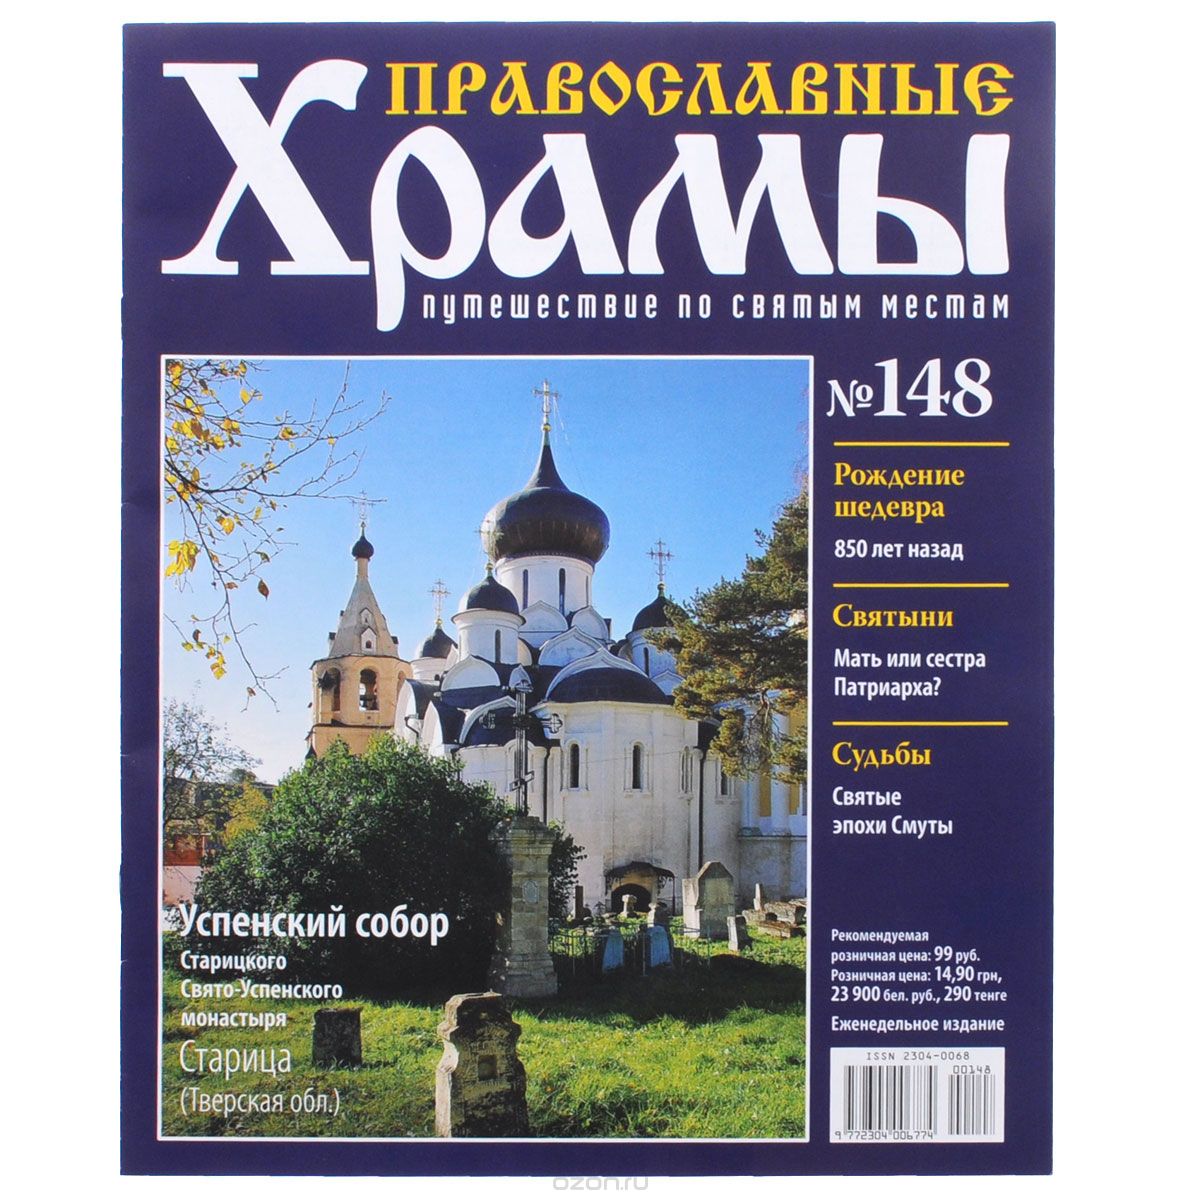 Скачать книгу "Журнал "Православные храмы. Путешествие по святым местам" № 148"